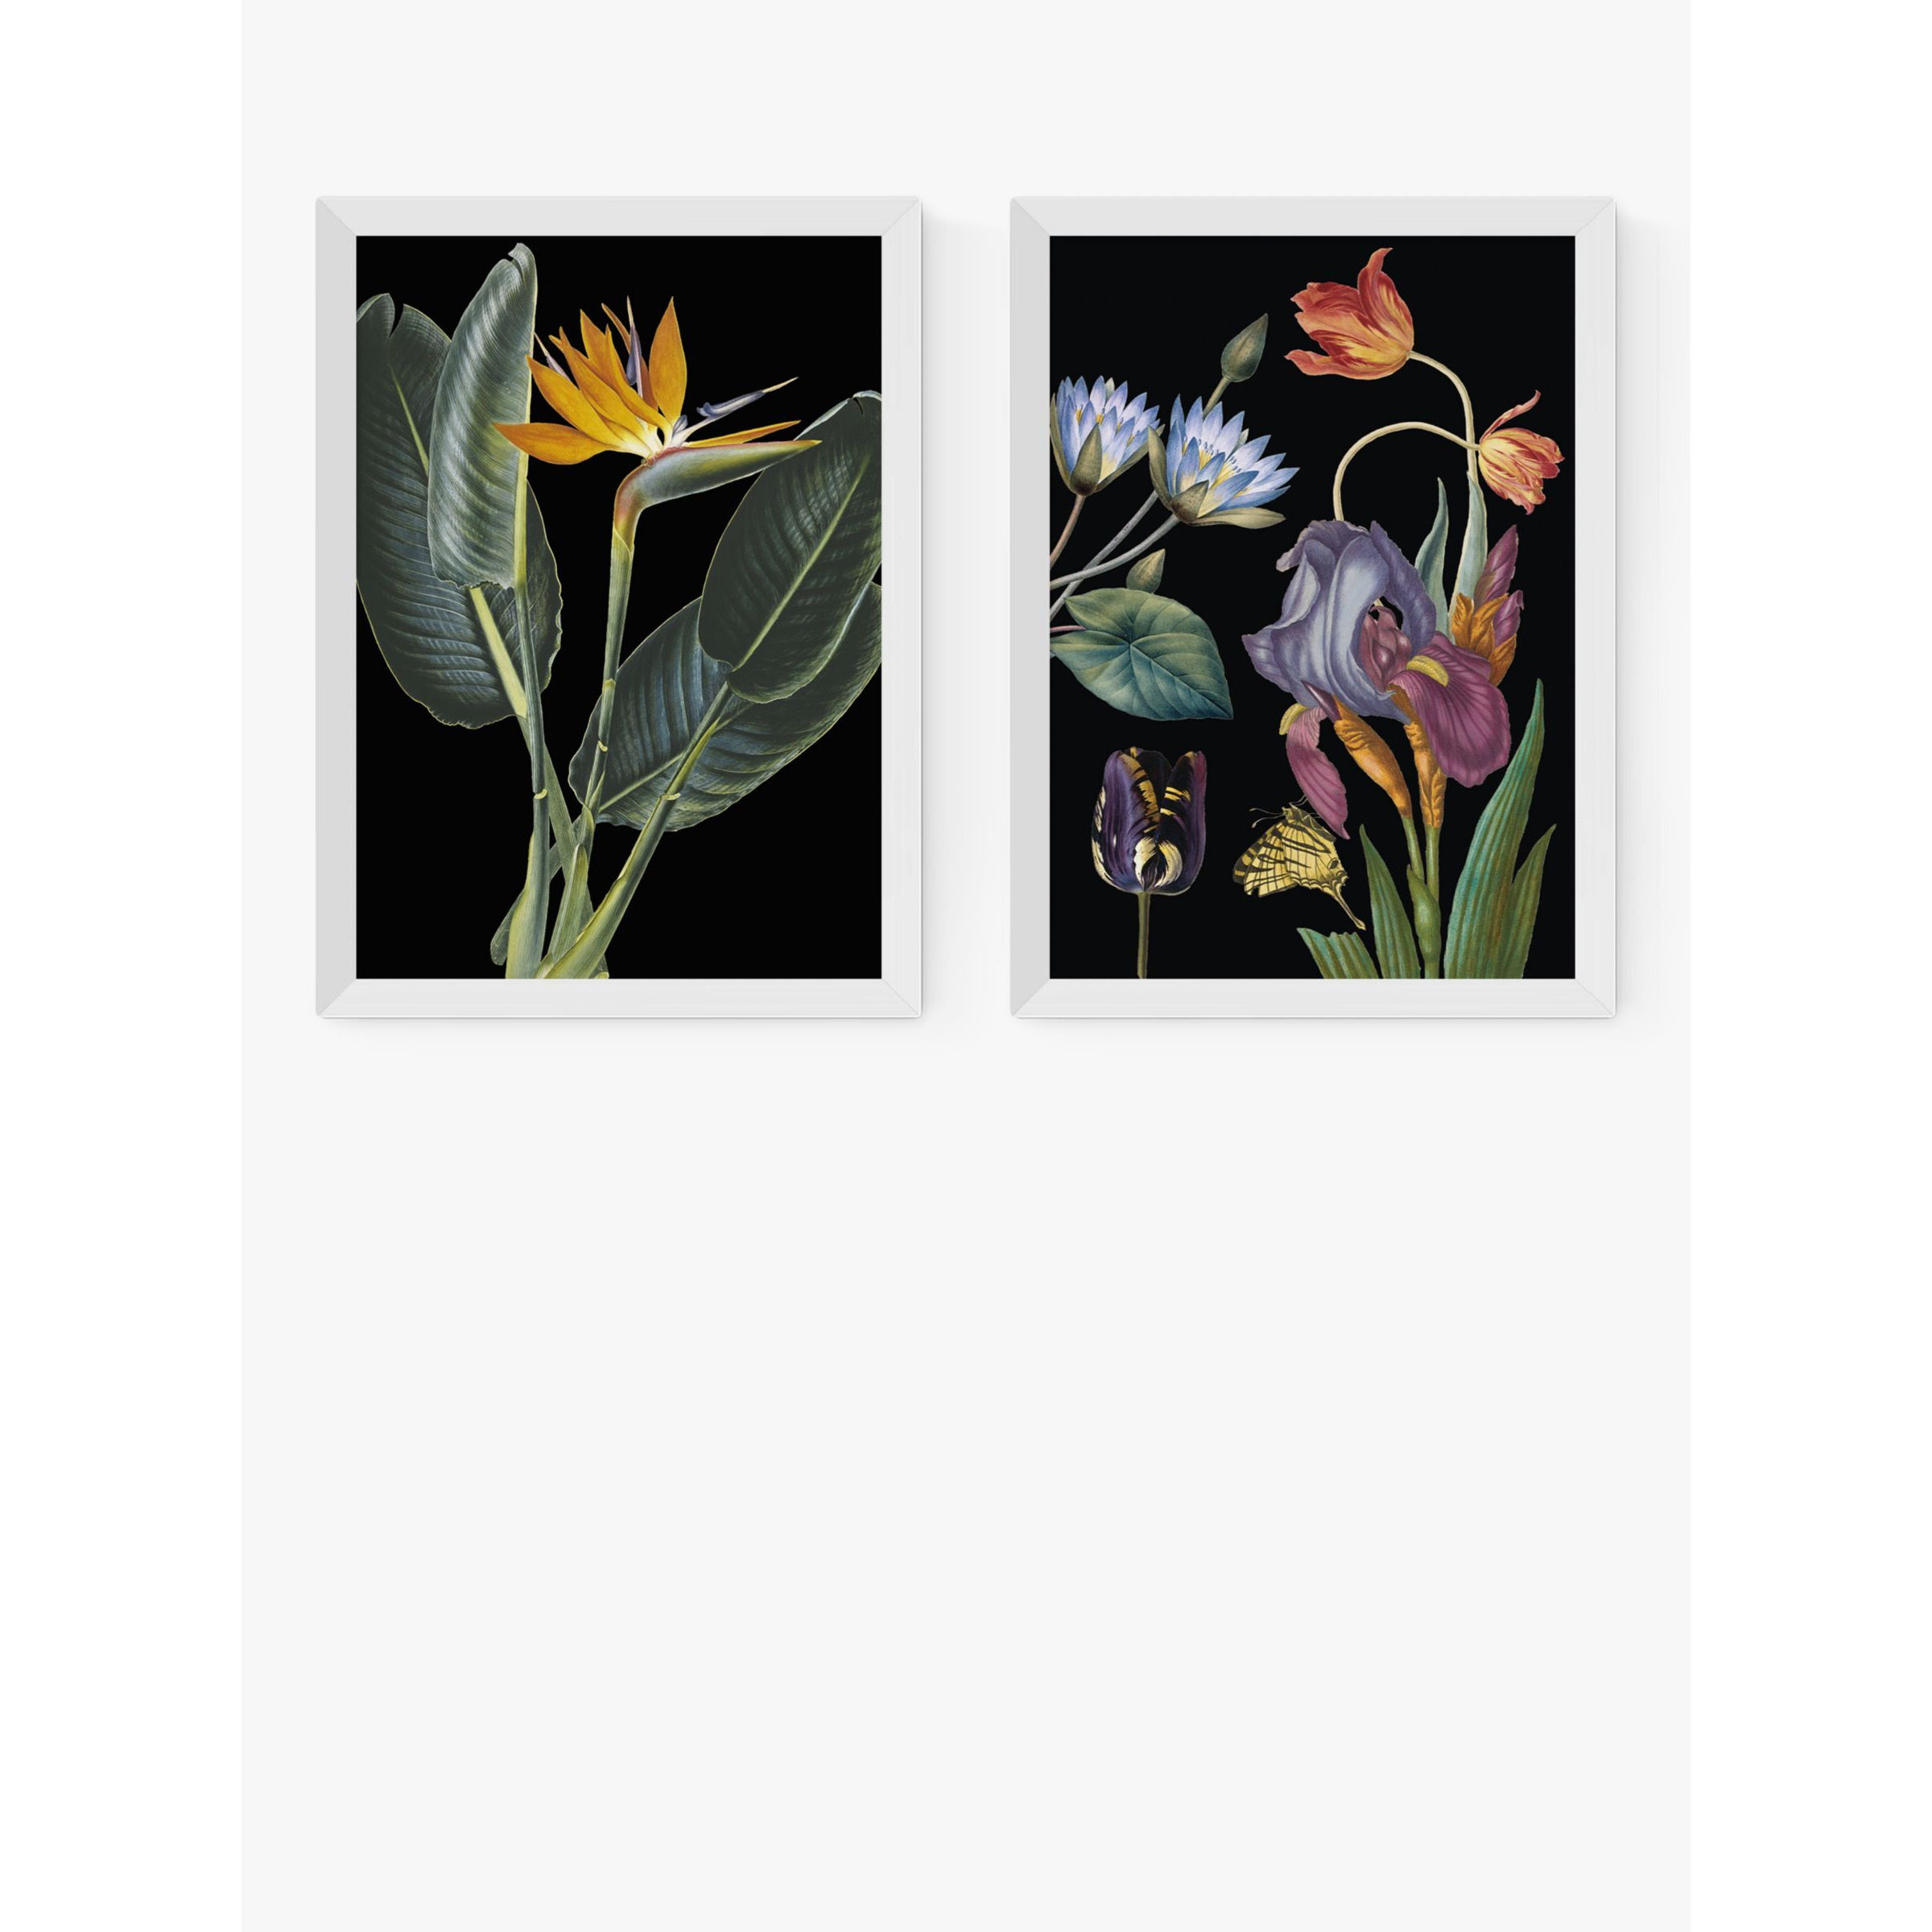 EAST END PRINTS Natural History Museum 'Dark Floral' Framed Print, Set of 2 - image 1